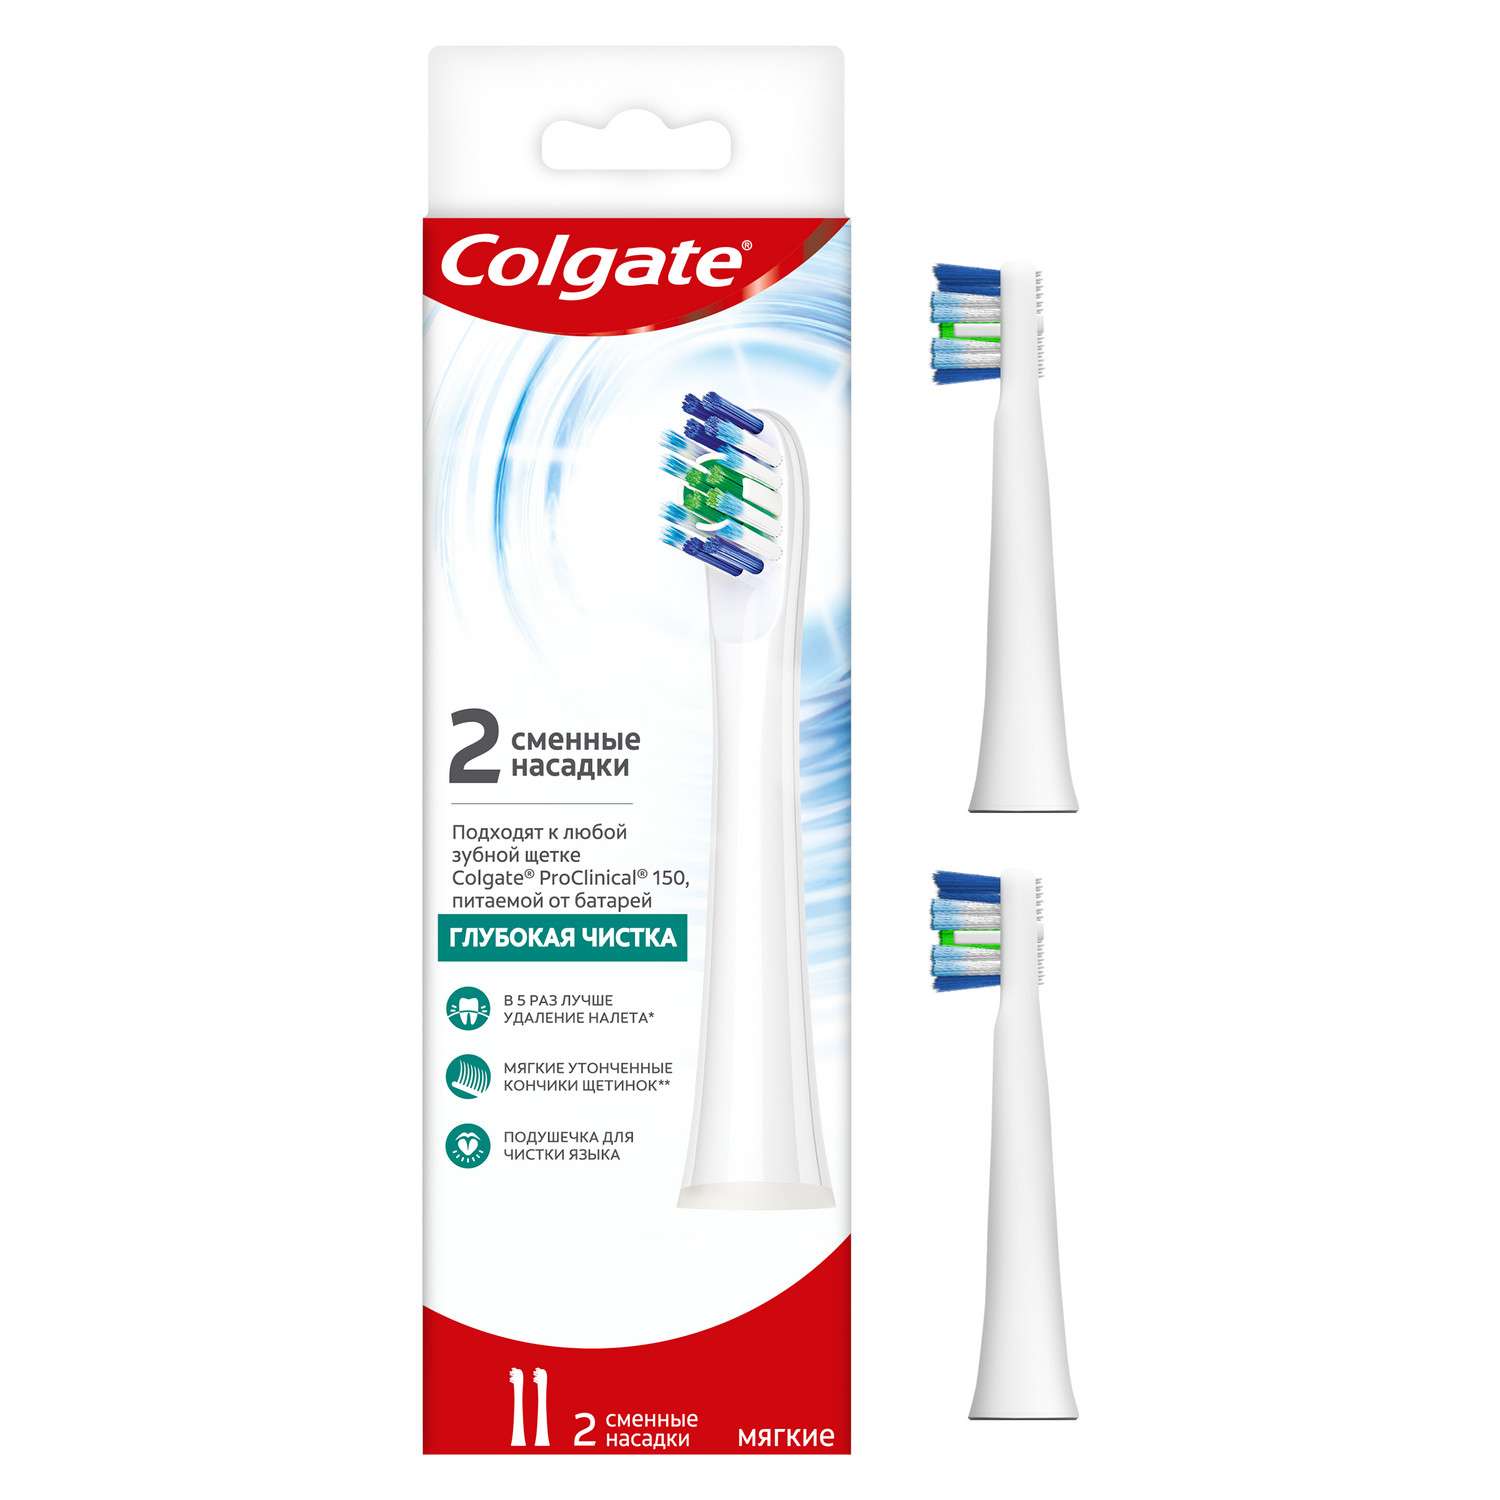 Насадки для зубной щетки Colgate Pro Сlinical 150 сменные мягкие 2шт CN07725A - фото 1